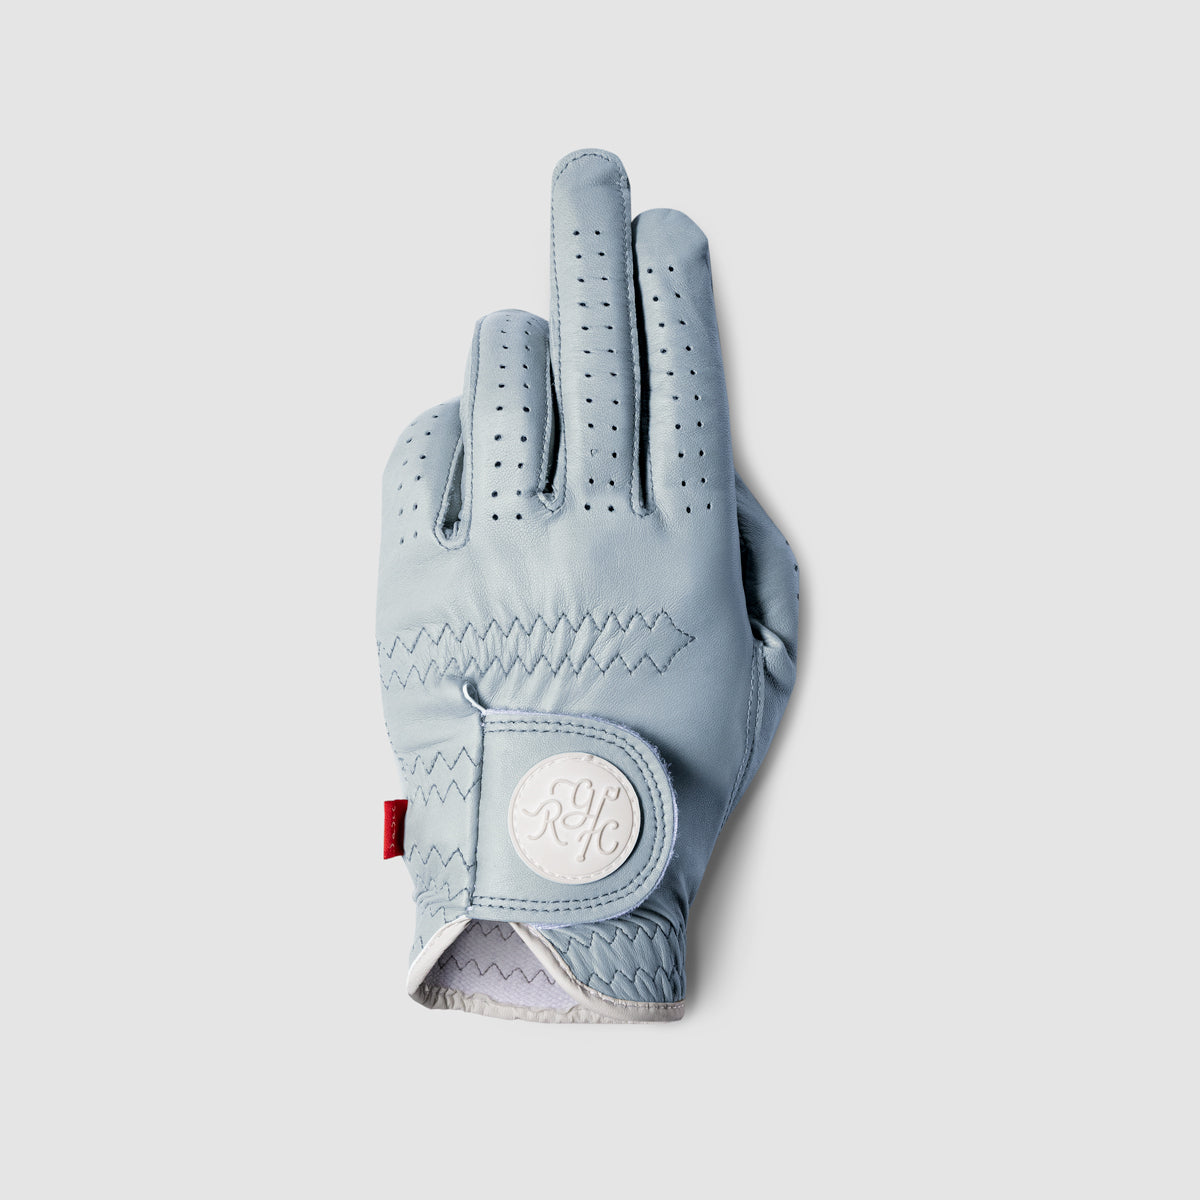 RGC CL-2 Golf Glove (Blue)